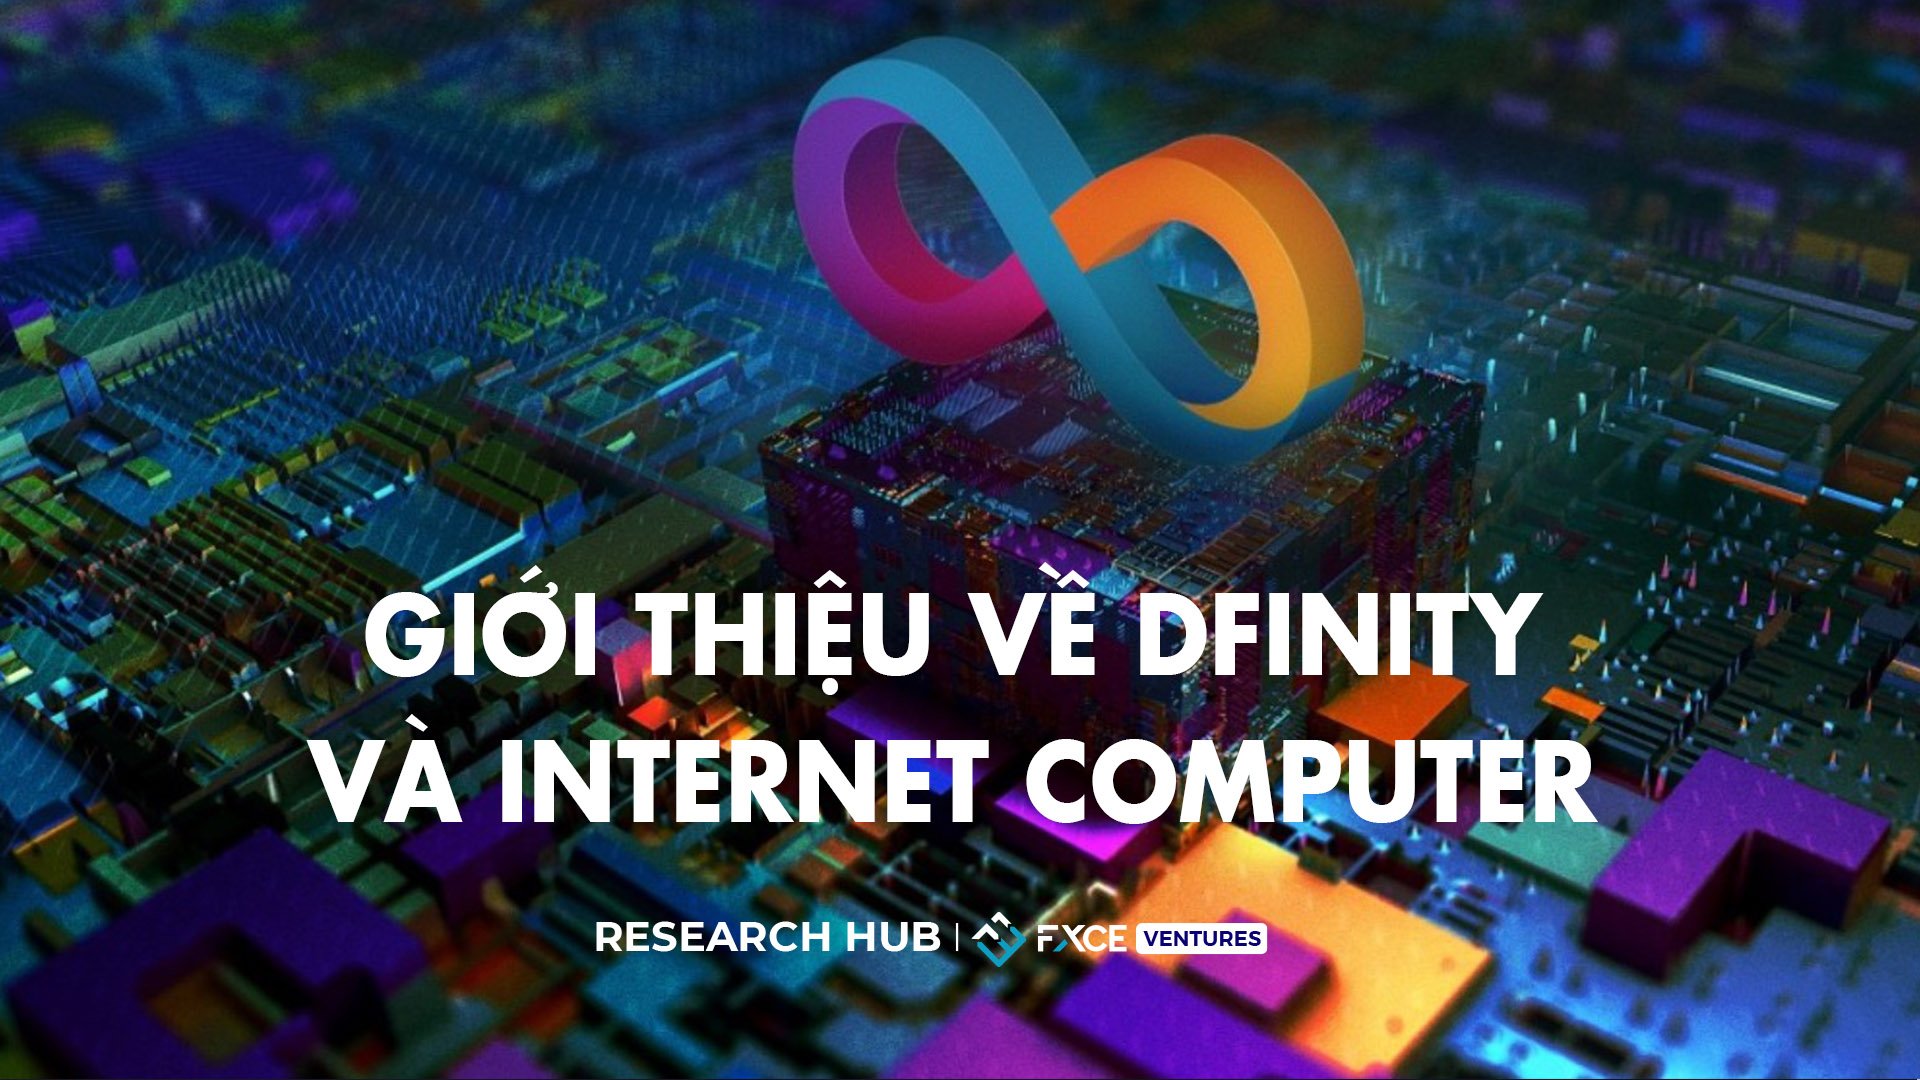 Giới thiệu về Internet Computer và Dfinity 